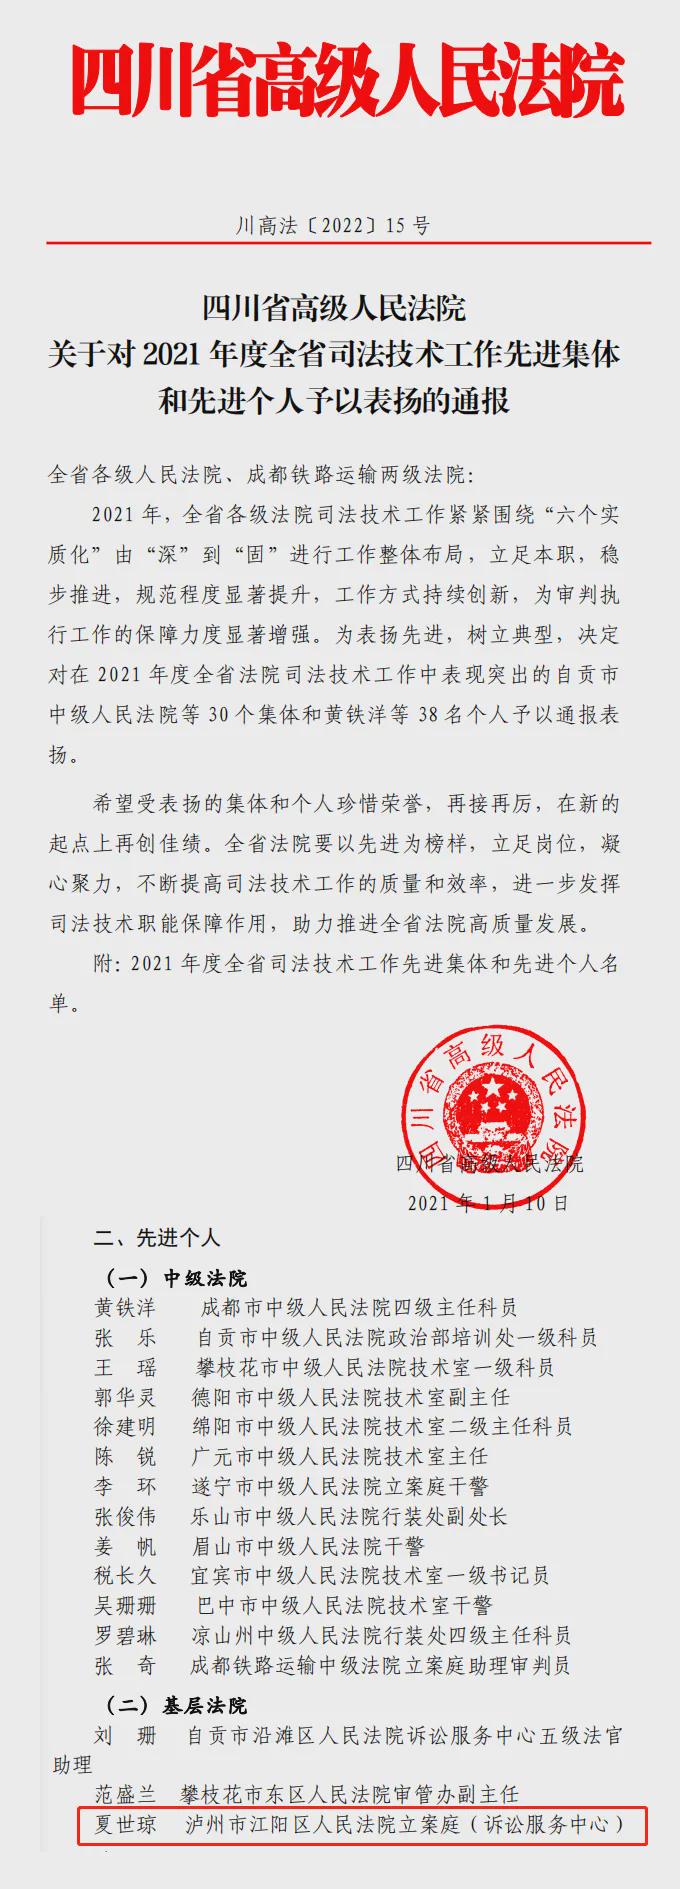 江陽法院法官夏世瓊被授予“全省法院司法技術工作先進個人”稱號